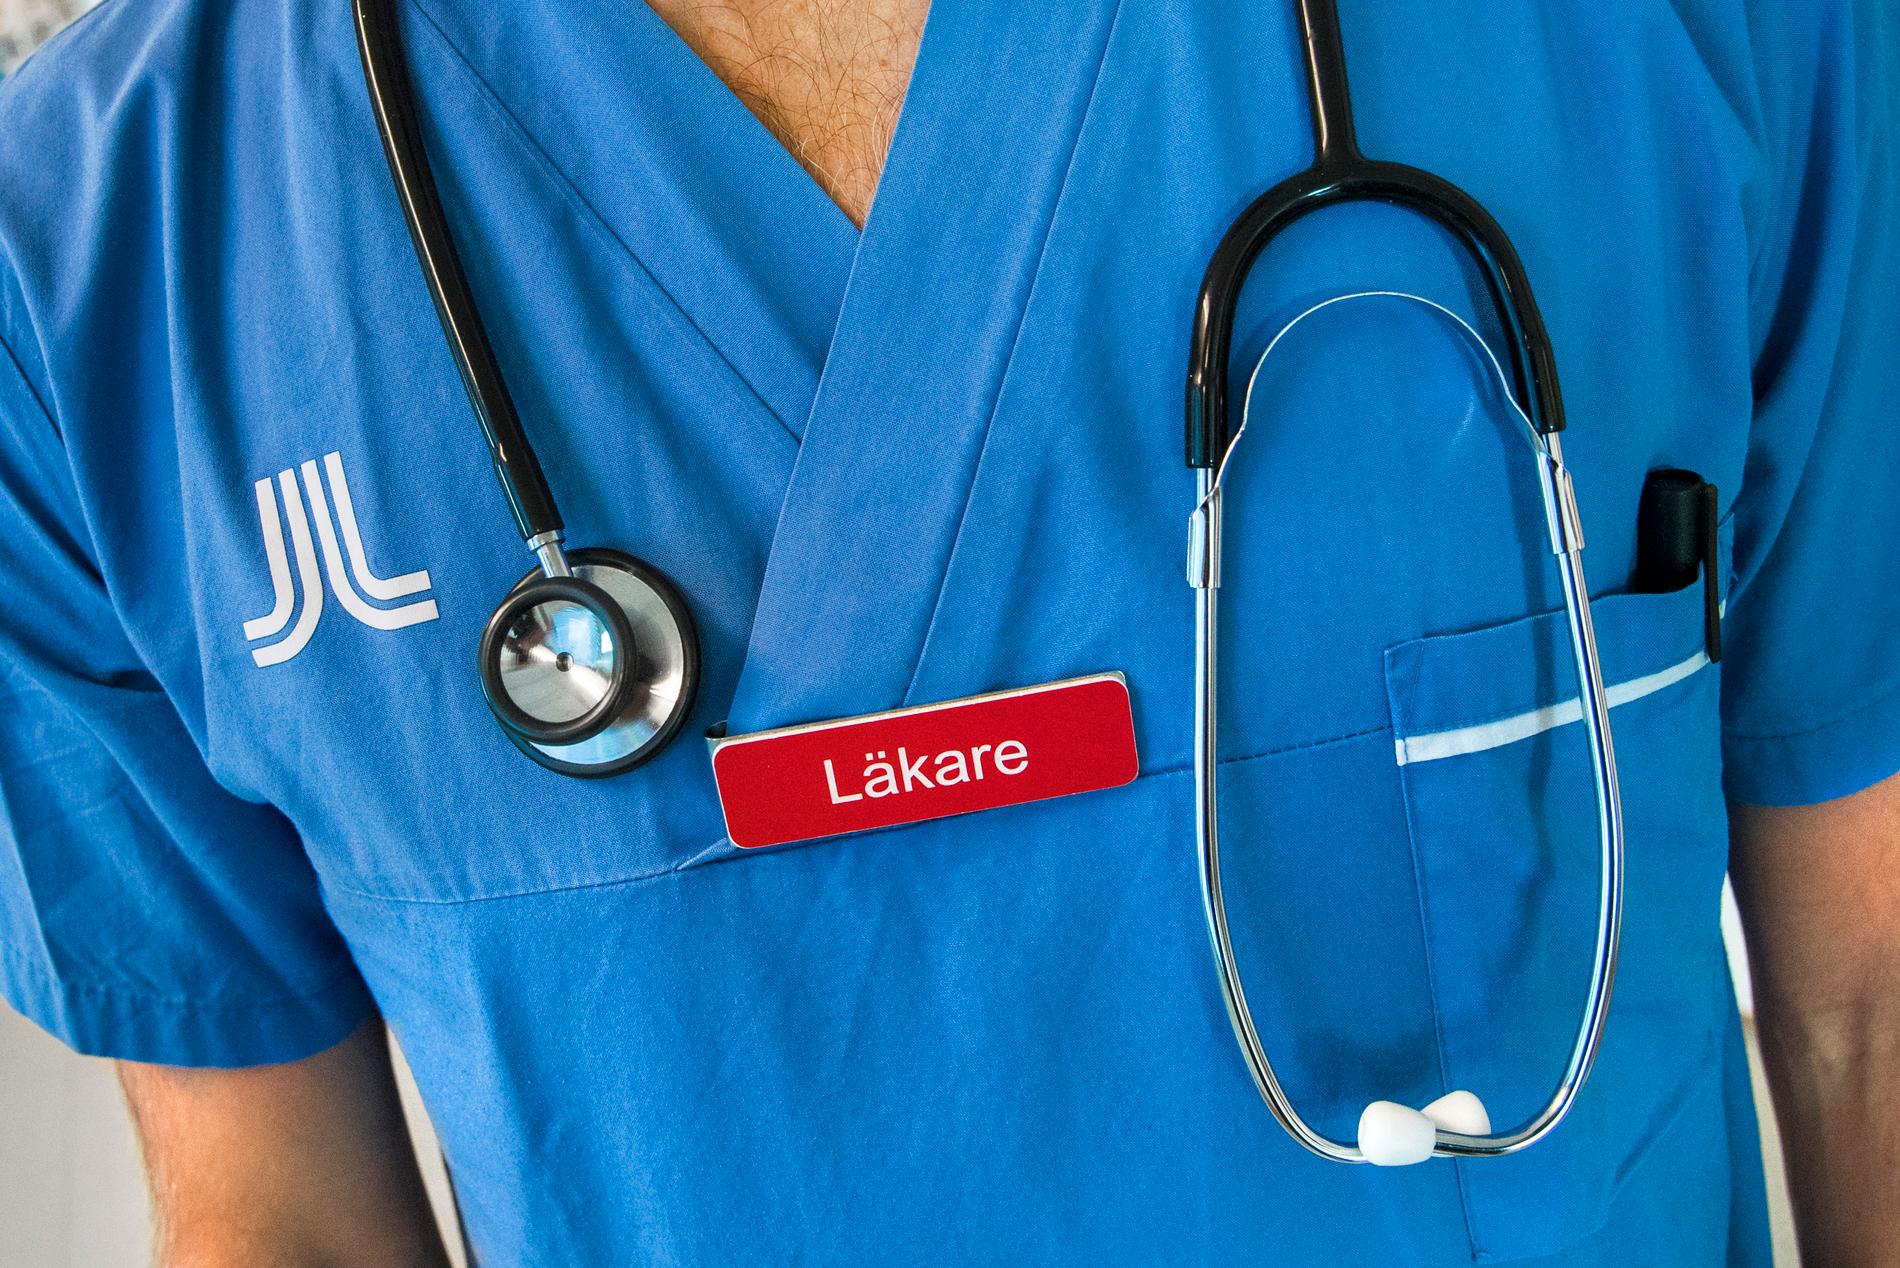 En läkare i sydöstra Skåne kan inte fortsätta arbeta på grund av sjukdom, anser Ivo. Läkaren själv är av en helt annan uppfattning. 